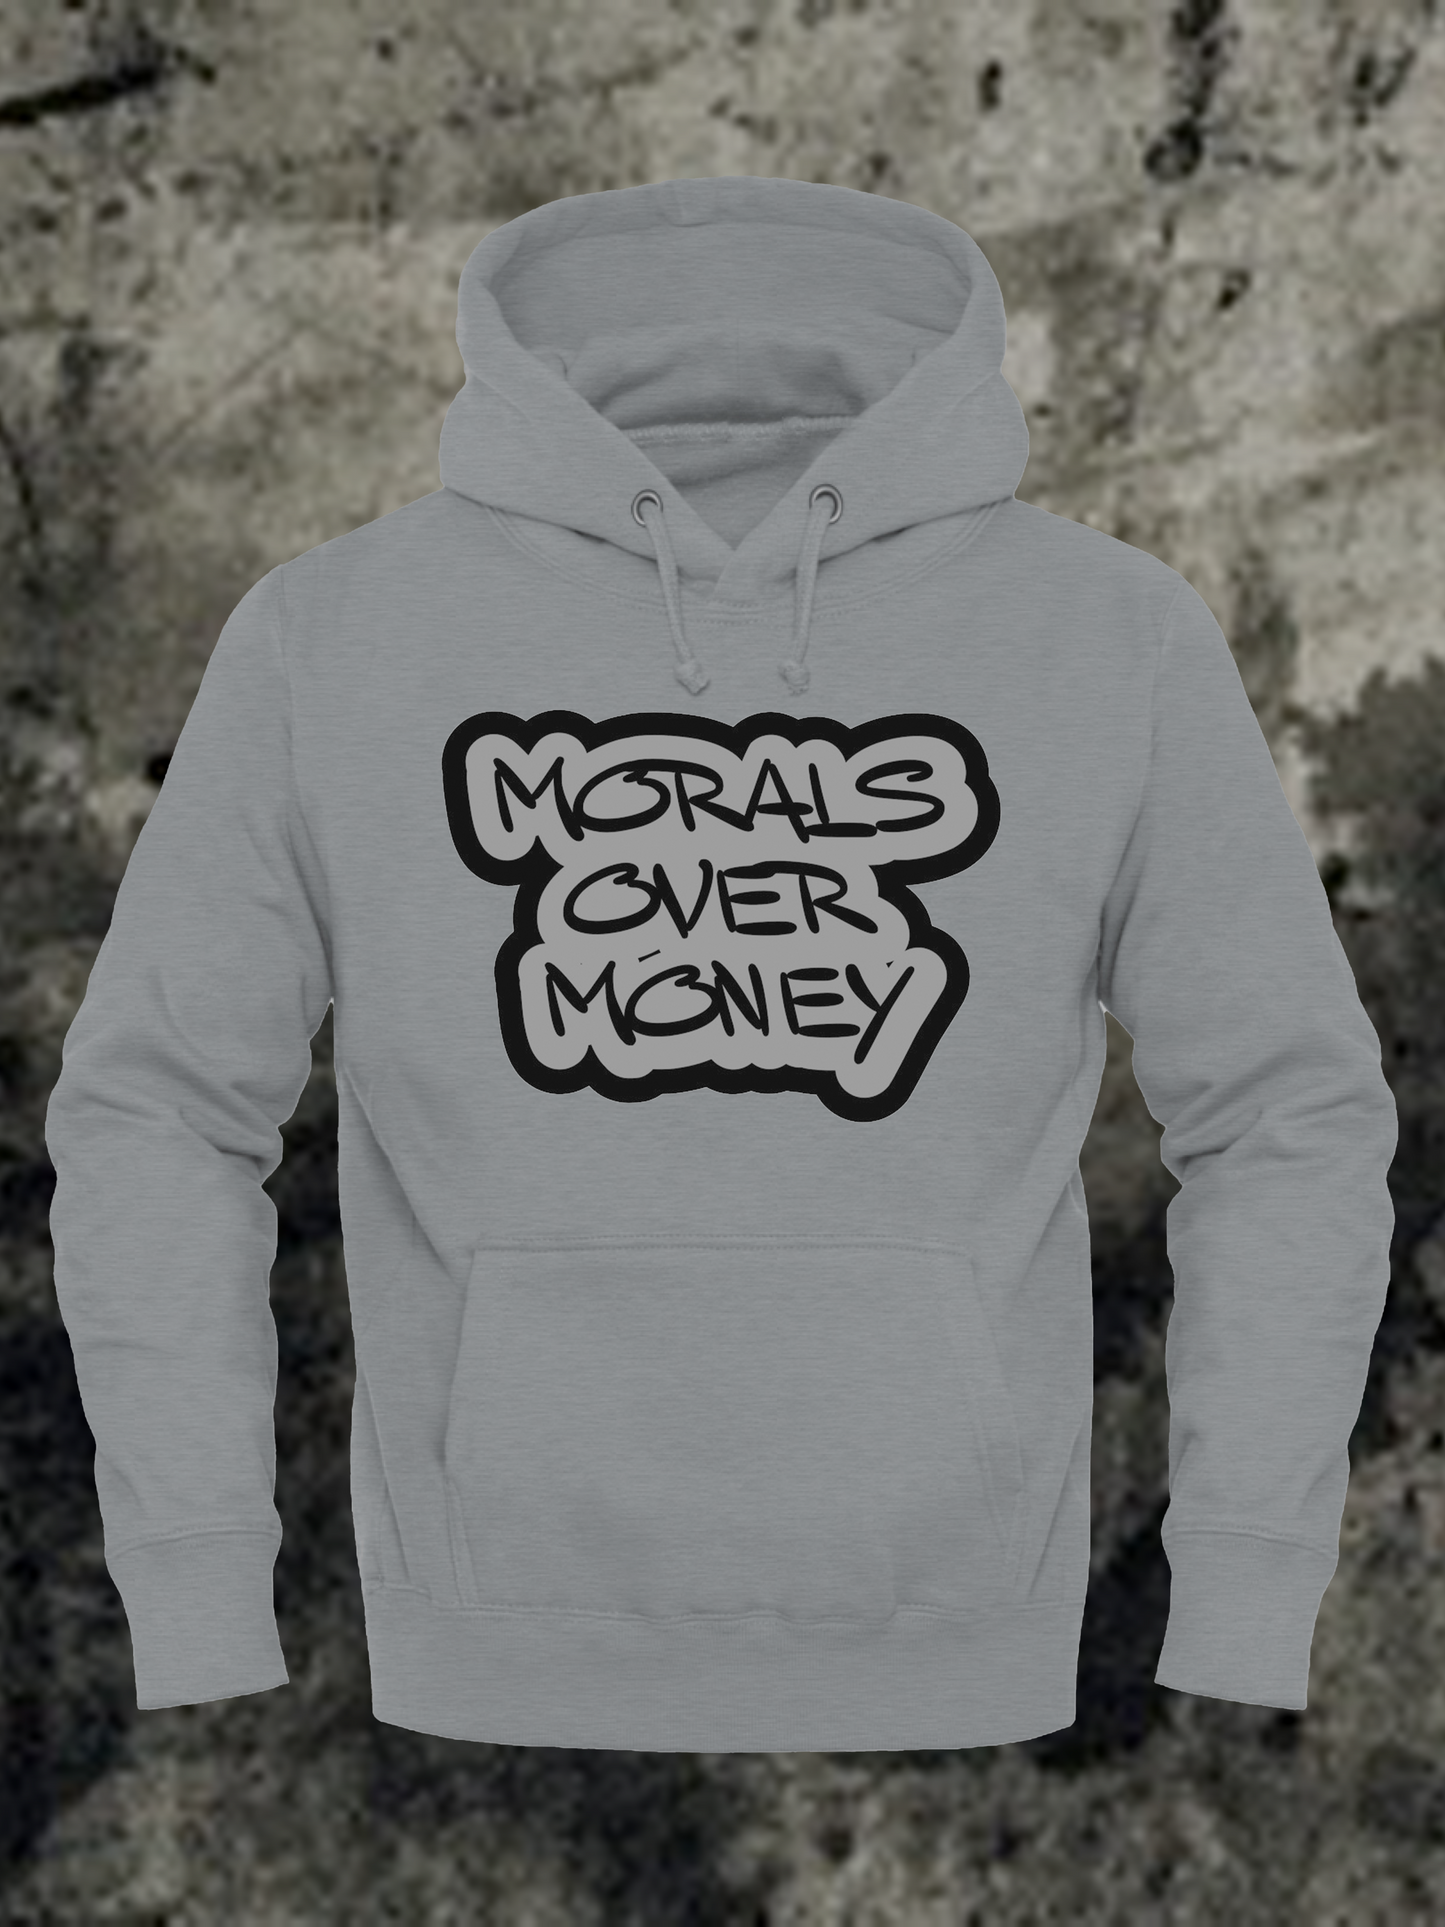 BB "Morals Over Money" Sweatshirt Hoodie - Unisex